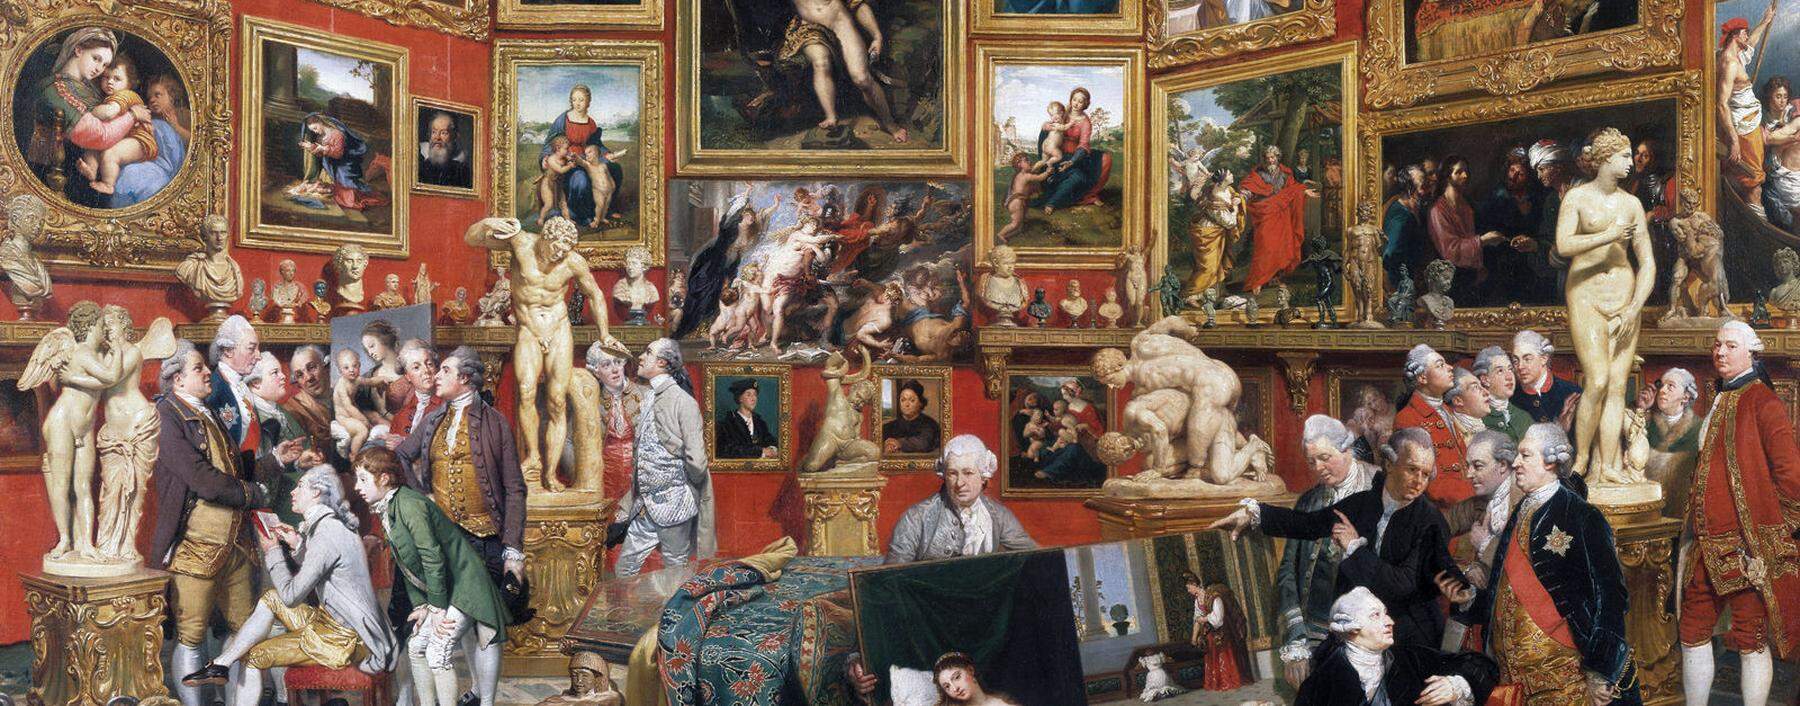 Der Maler Johann Zoffany war ab 1772 in Florenz und malte dort die Tribuna degli Uffizi. Viele dieser Kunstwerke befinden sich noch heute dort.